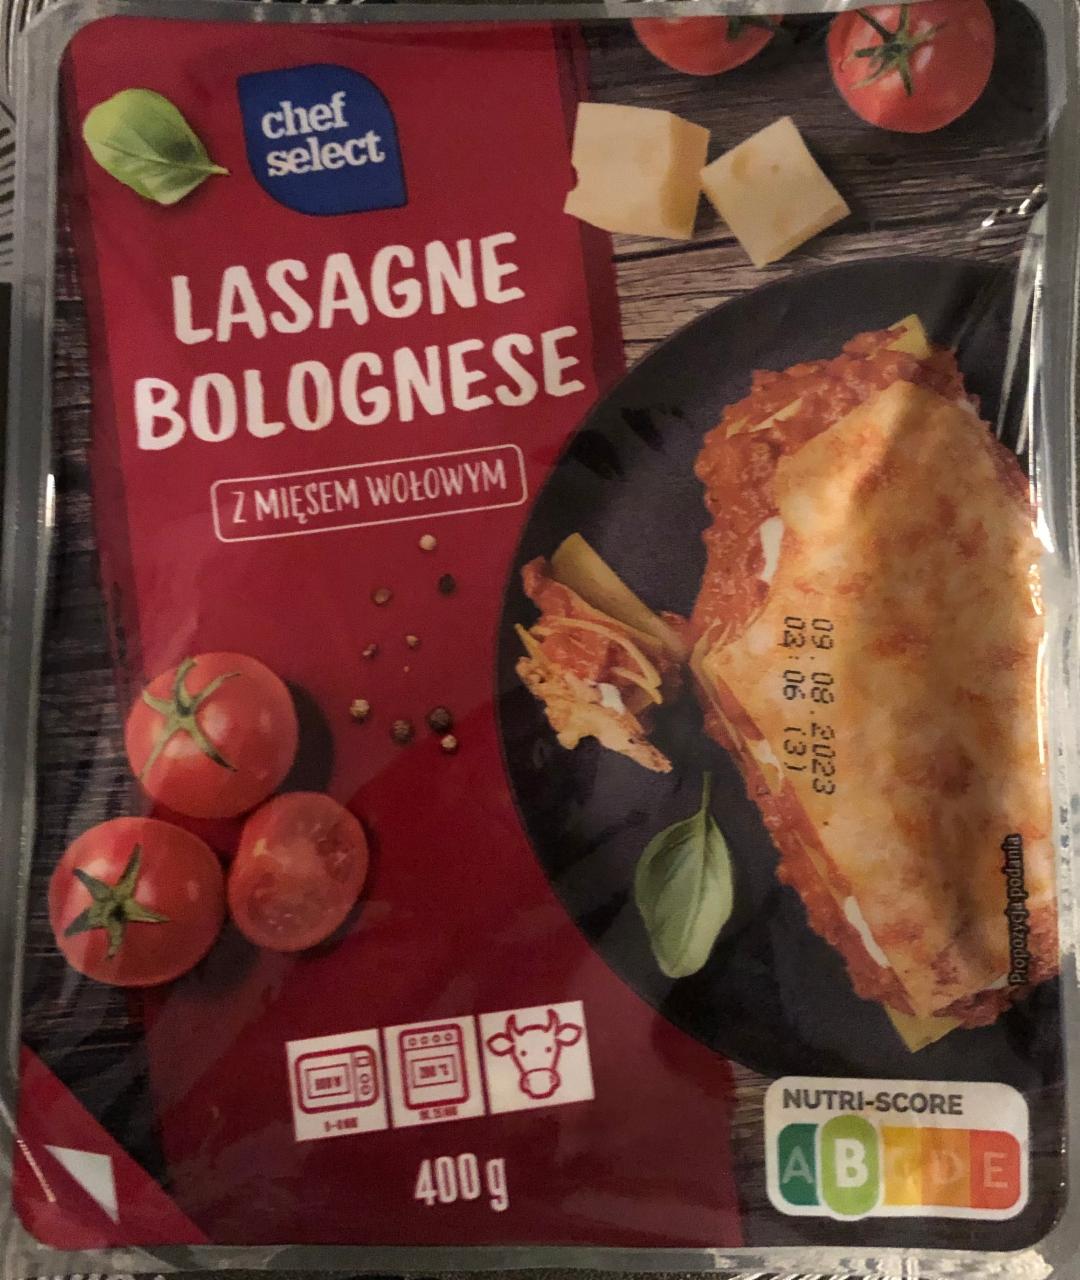 Lasagne bolognese z mięsem wołowym Chef Select - kalorie, kJ i wartości  odżywcze